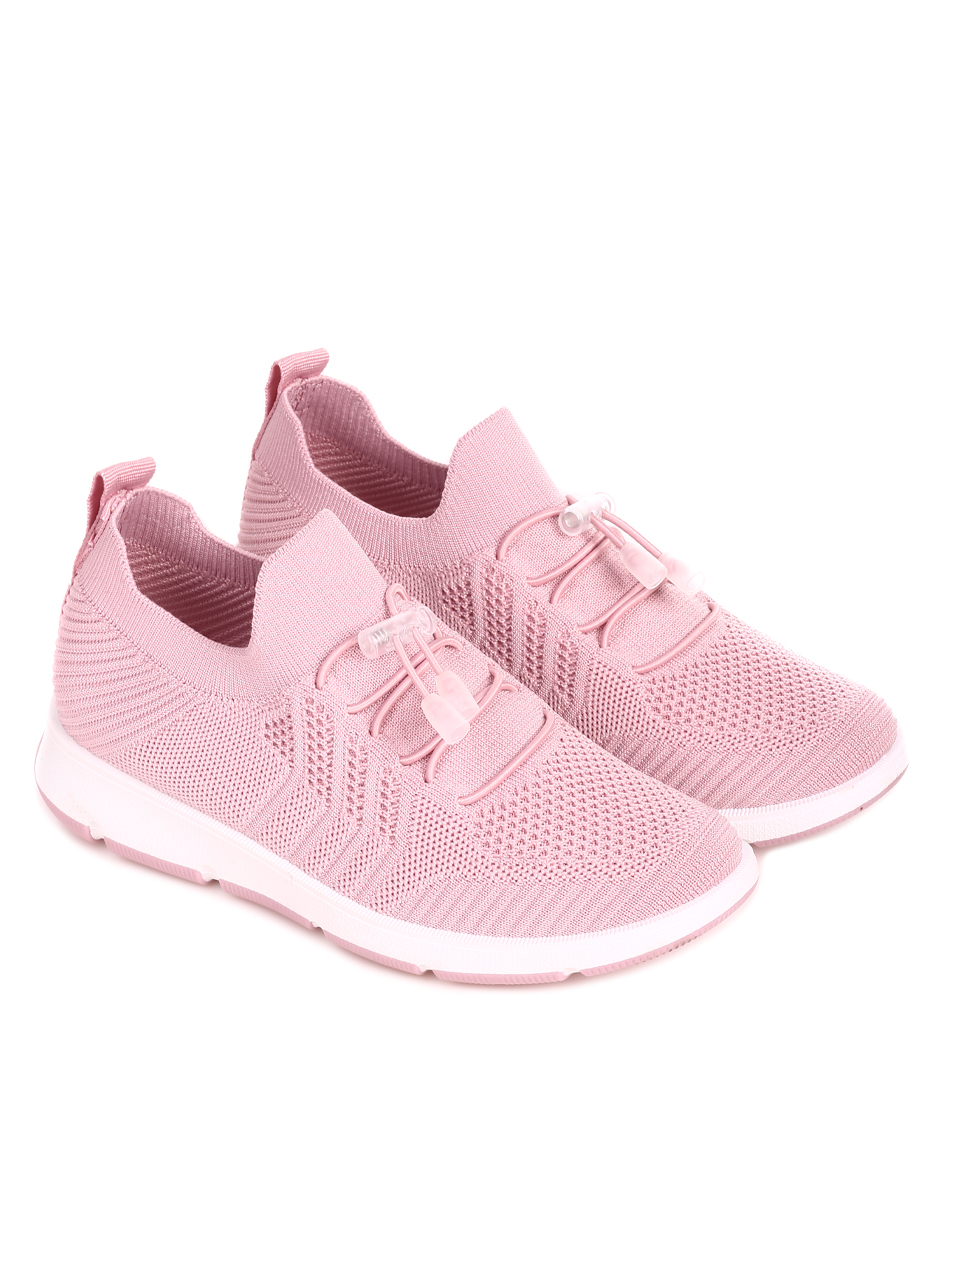 Ежедневни дамски комфортни обувки в розово 3U-22710 pink